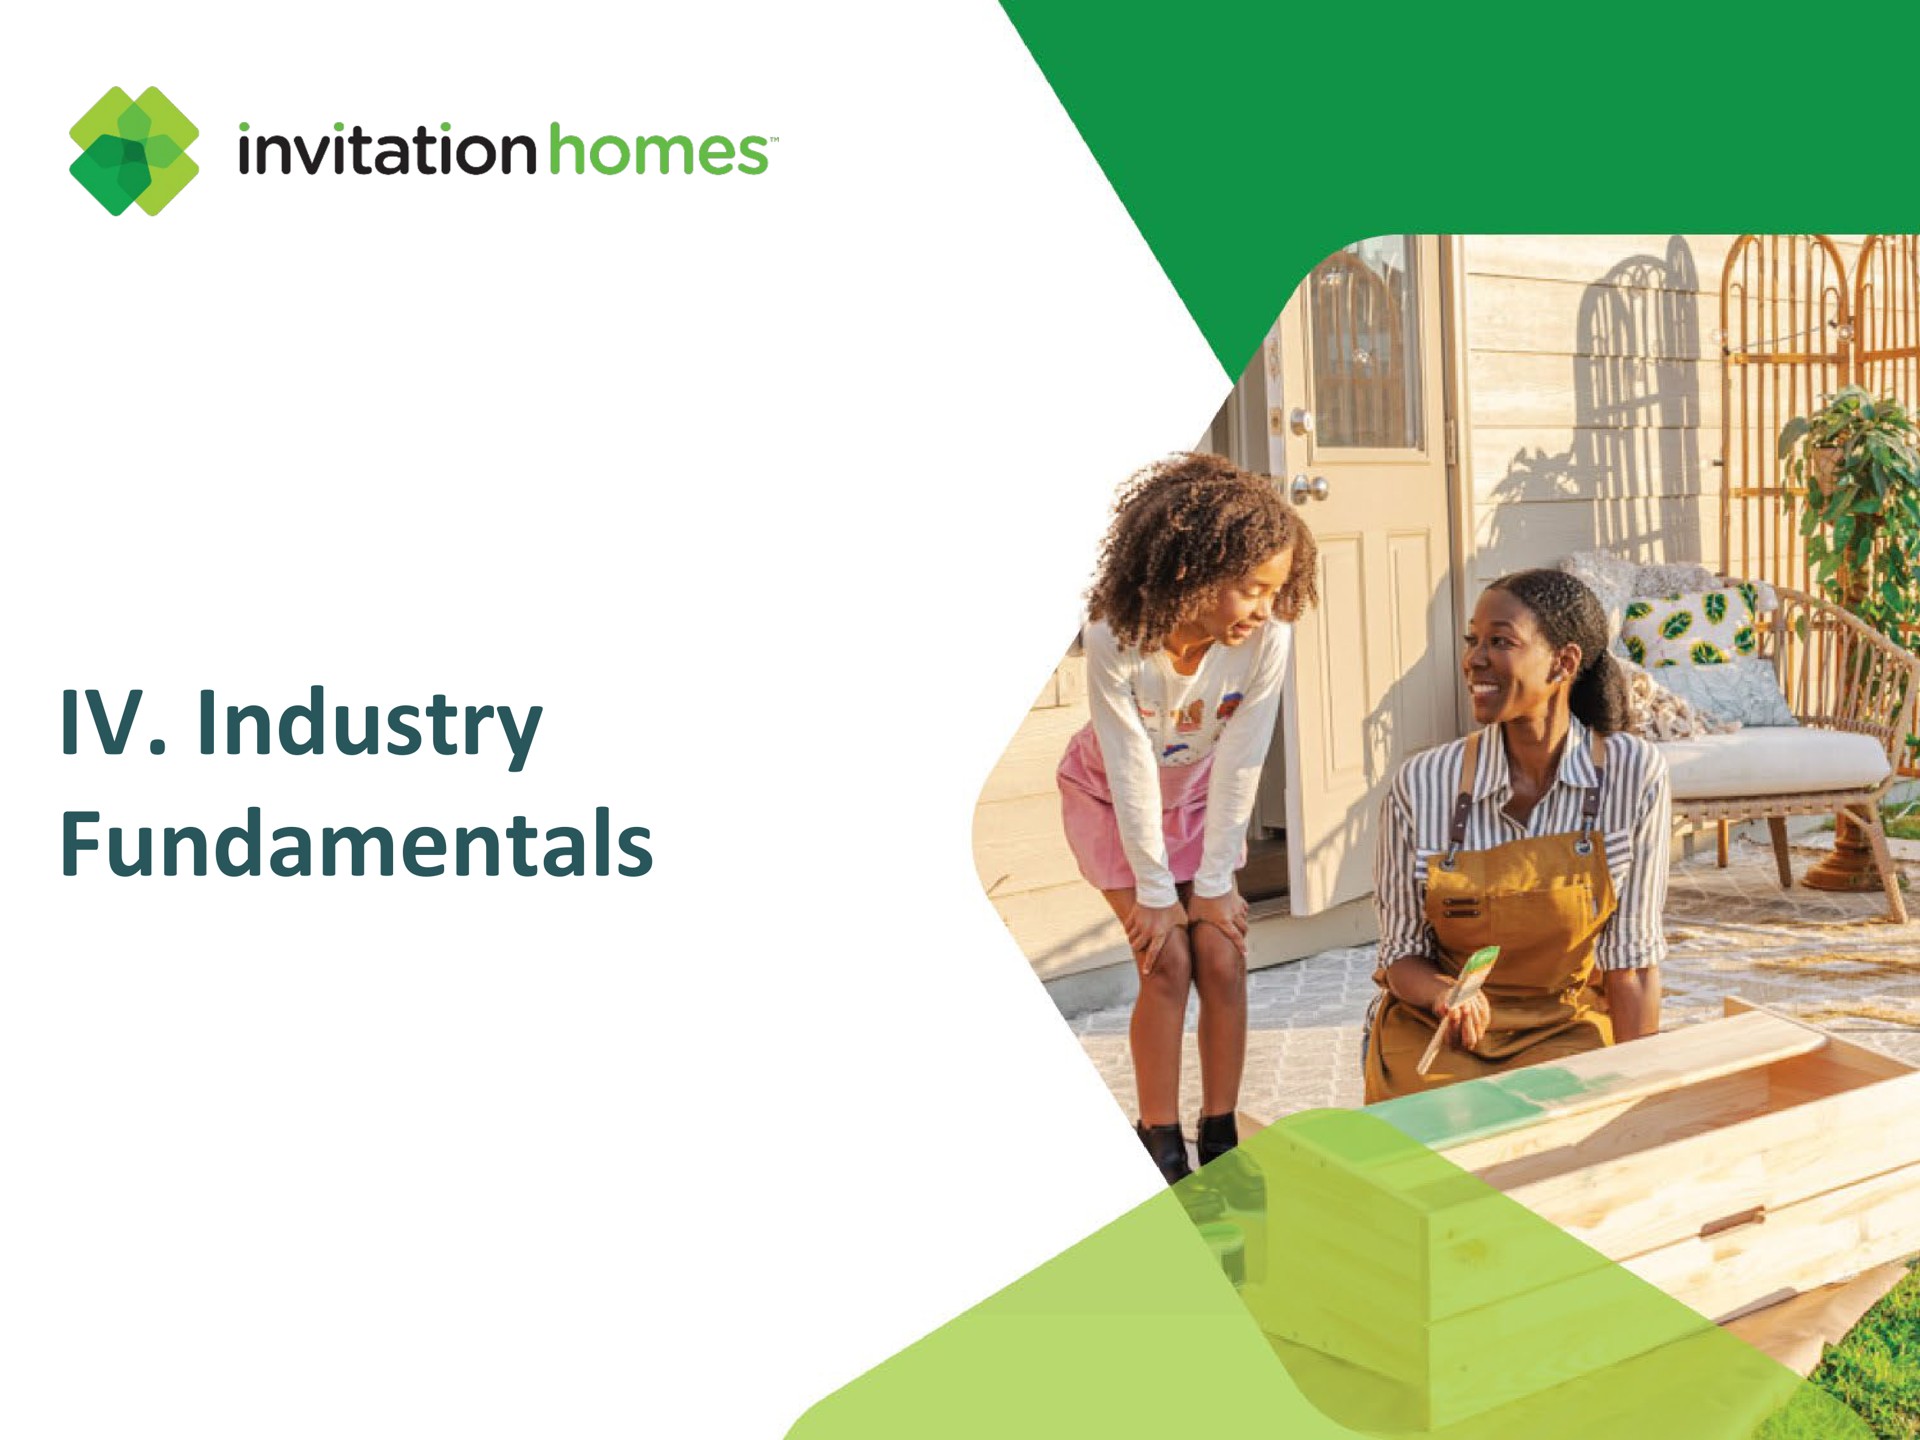 industry fundamentals invitation homes | Invitation Homes